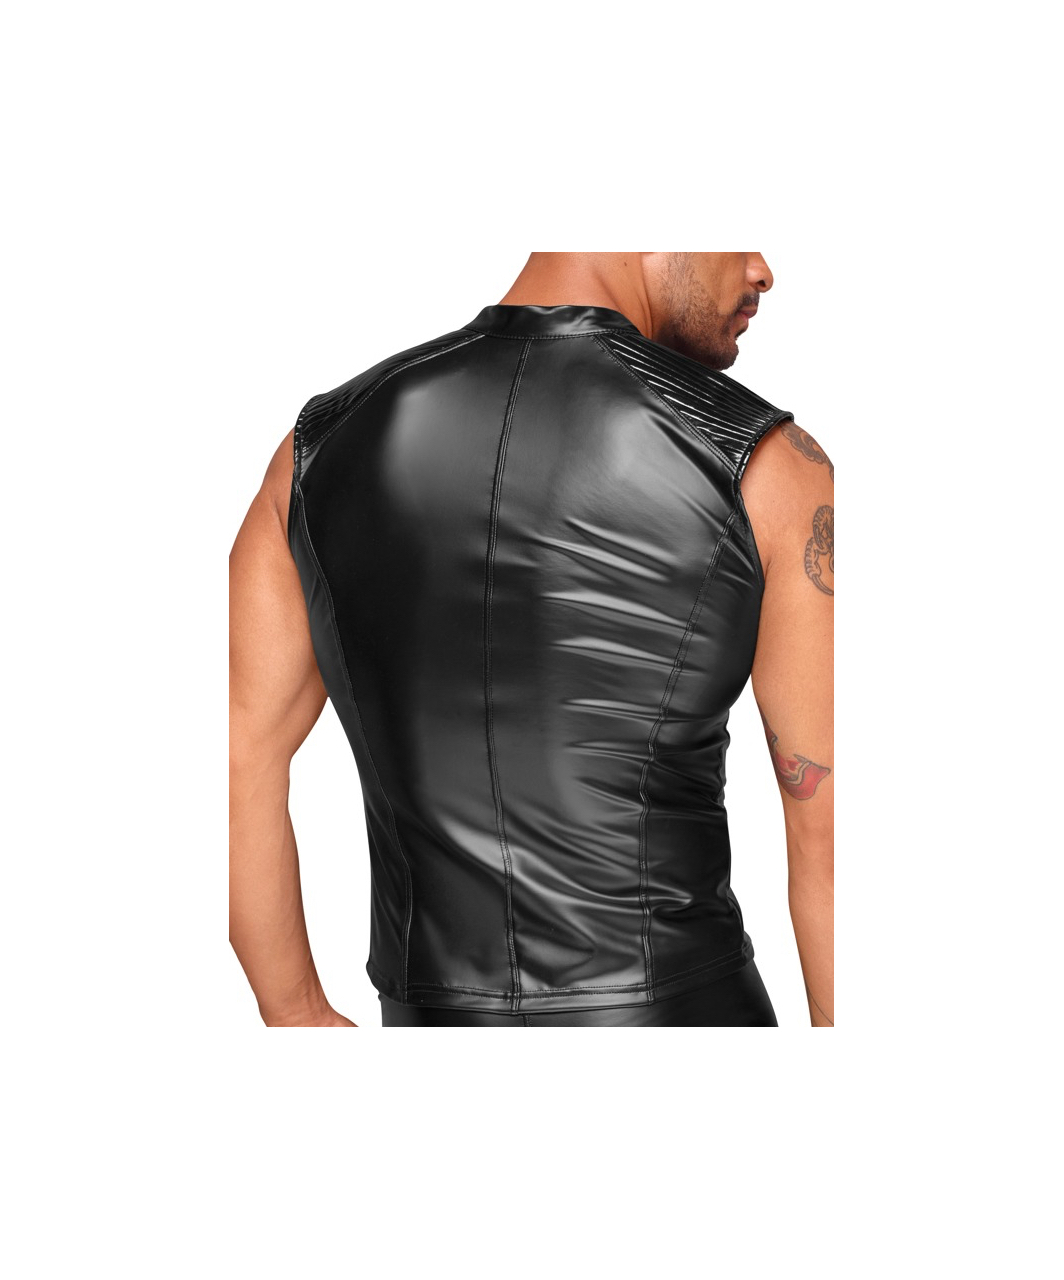 Noir Handmade melns matēta auduma bezpiedurkņu krekls ar rāvējslēdzēju